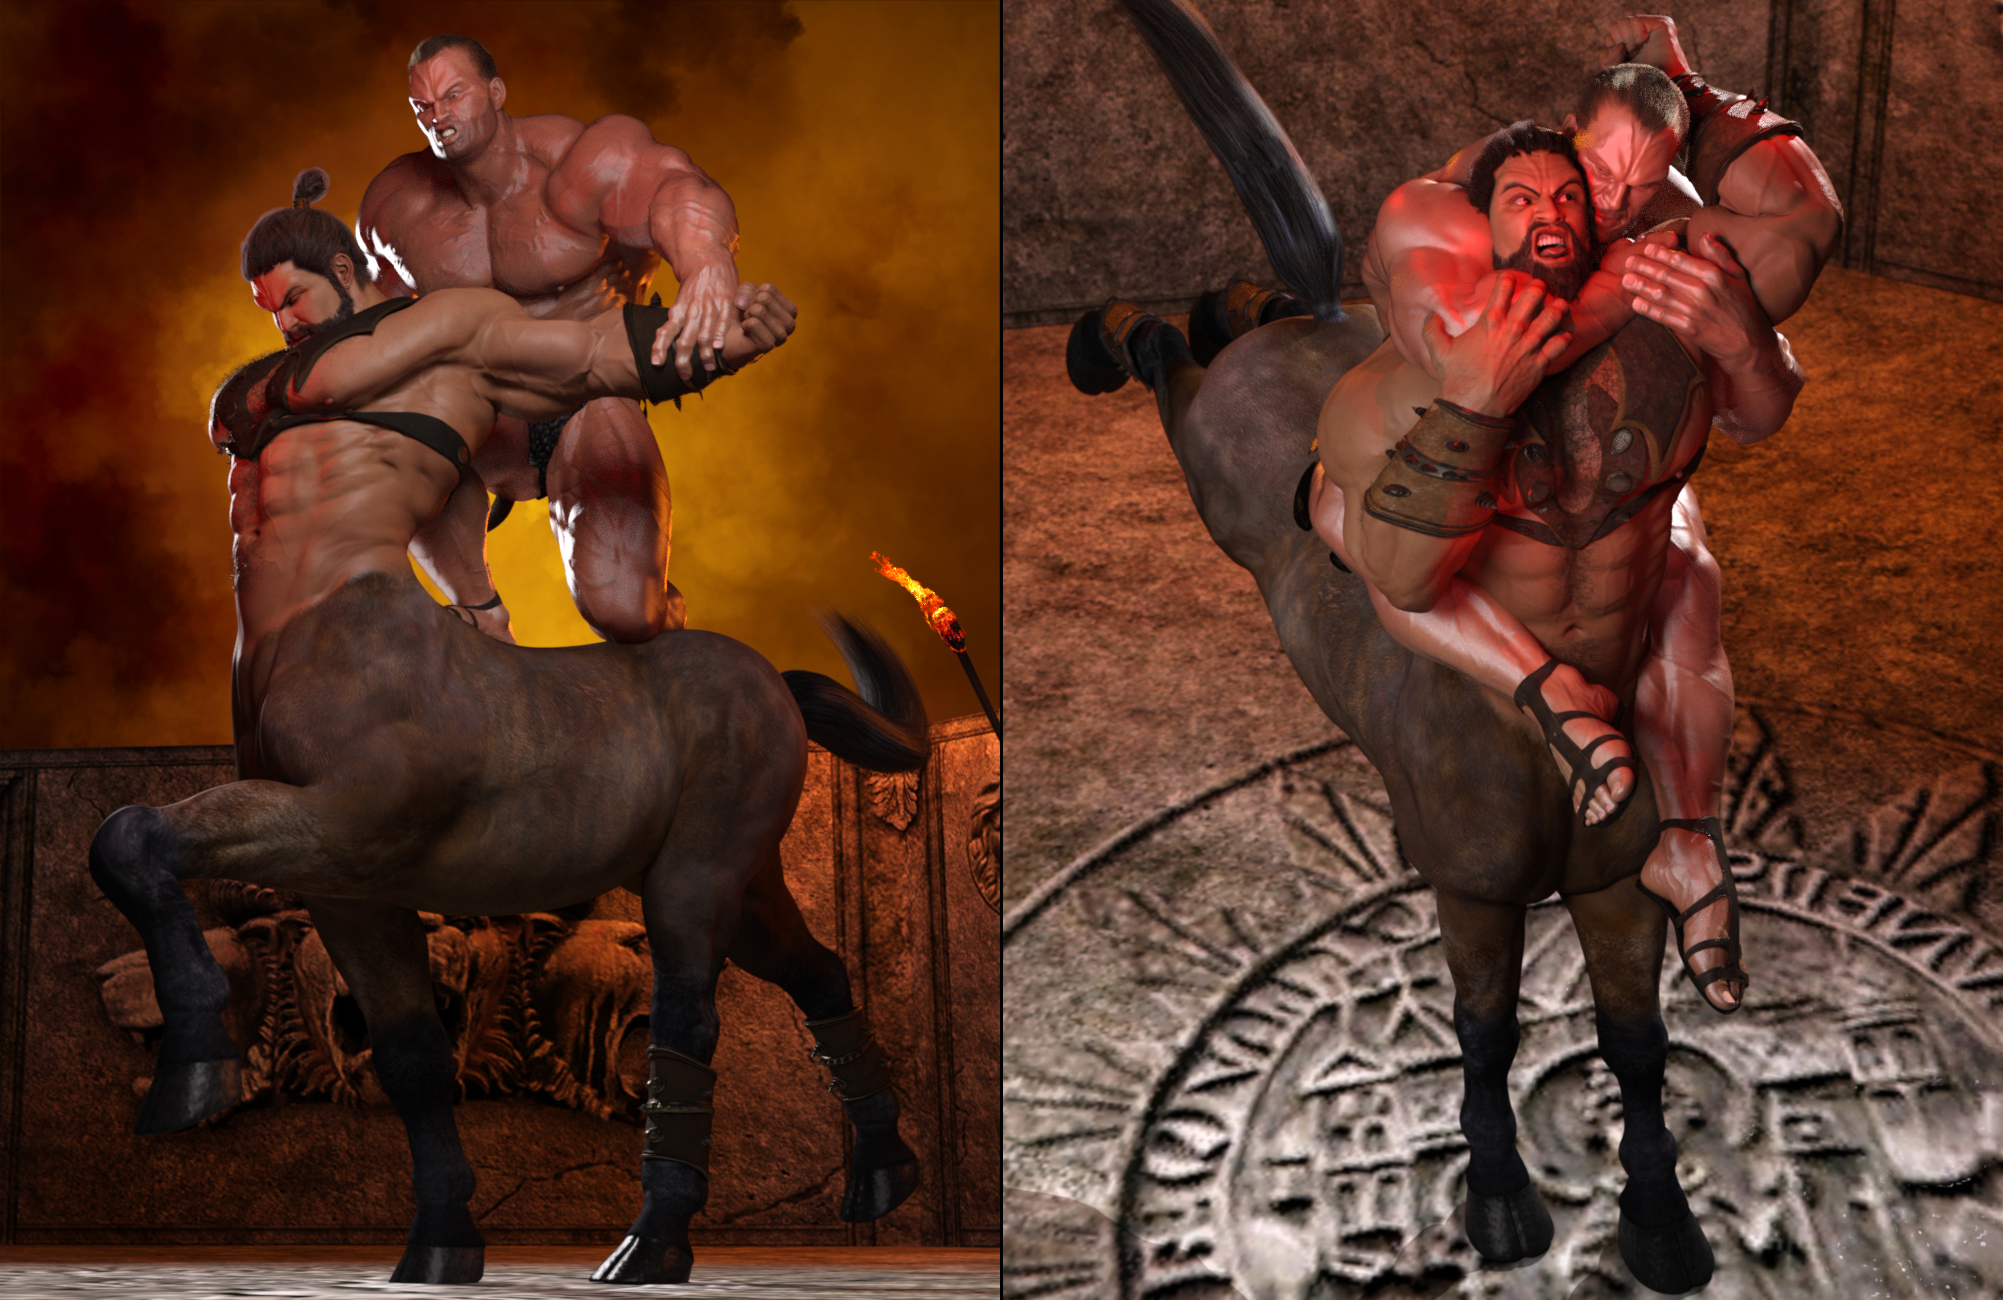 Nemesis: Hercules vs Nessus by: SimonWM, 3D Models by Daz 3D